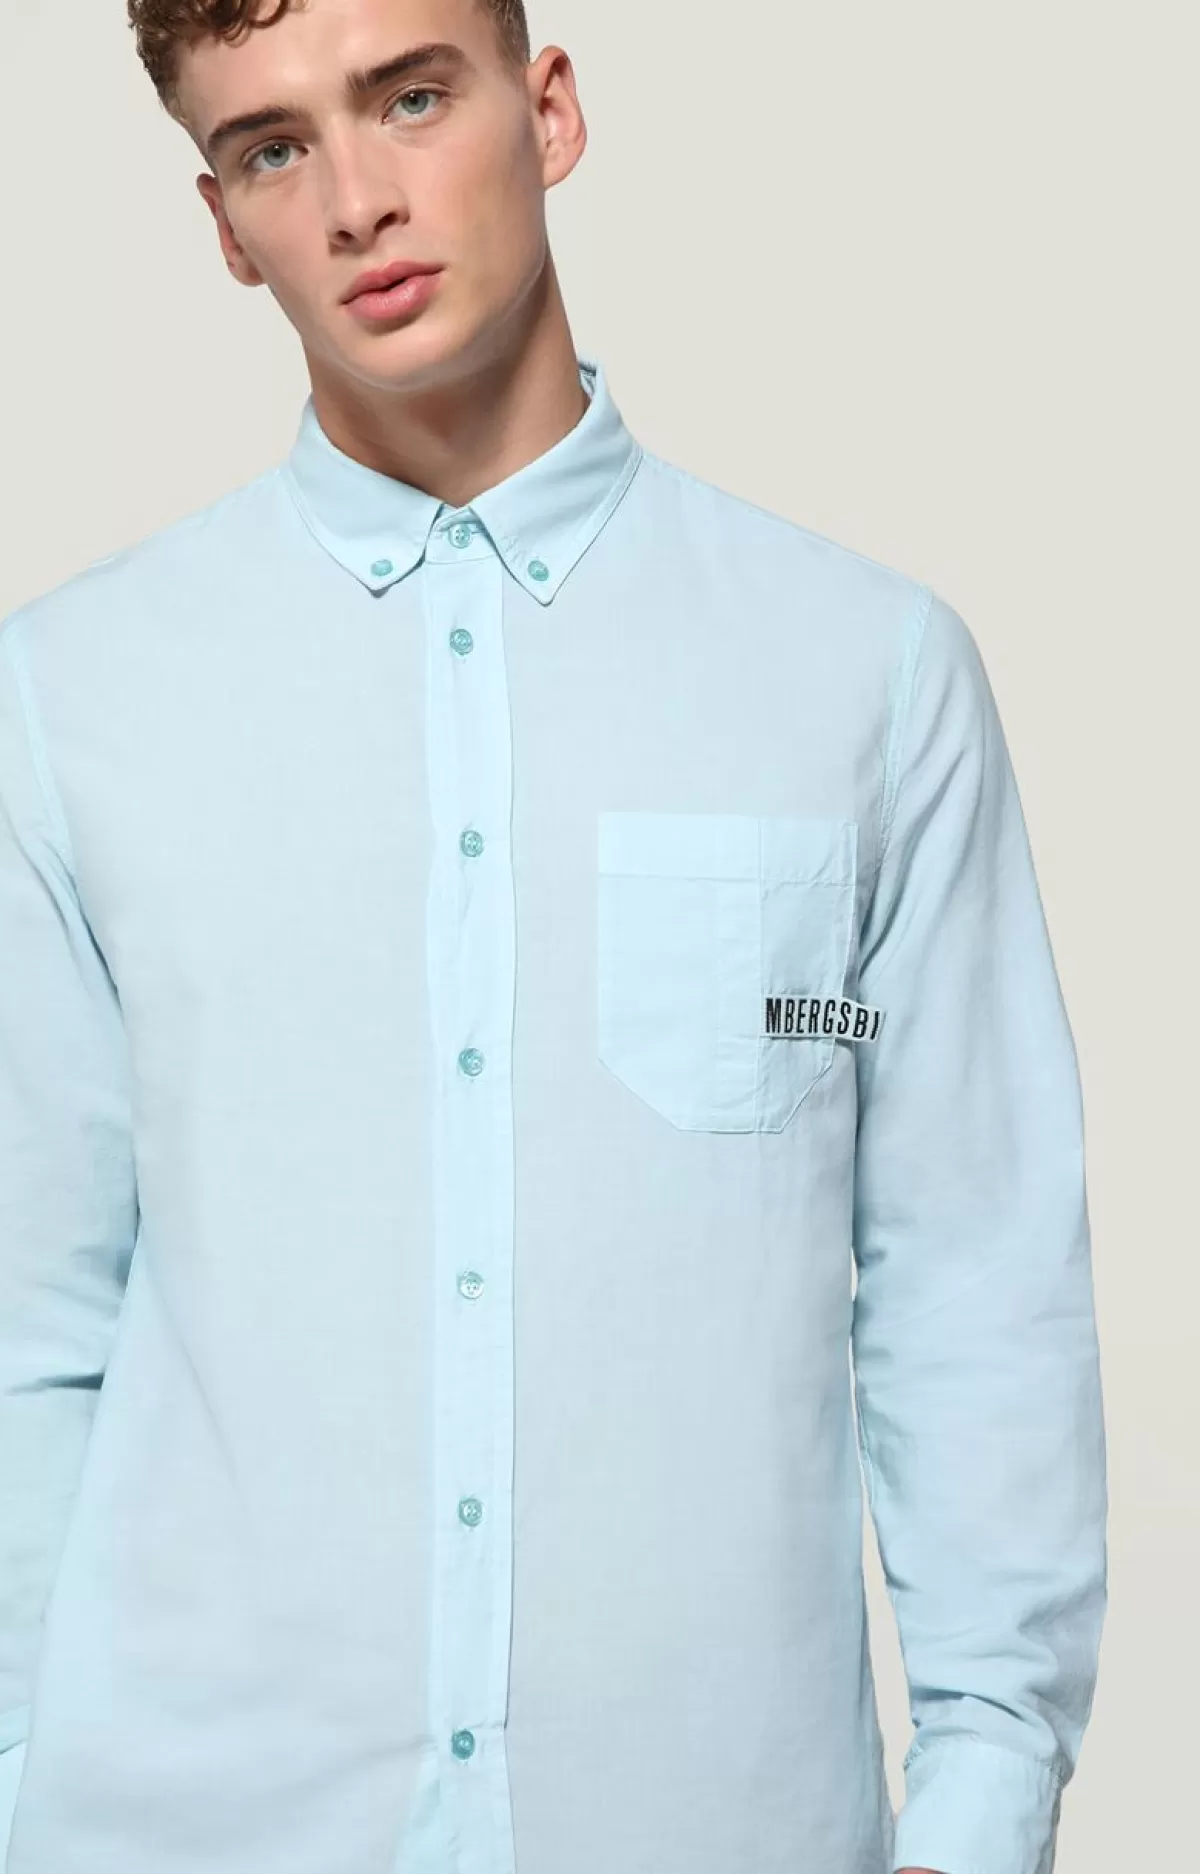 Bikkembergs Men'S Shirt - Tencel Light Turquoise Flash Sale